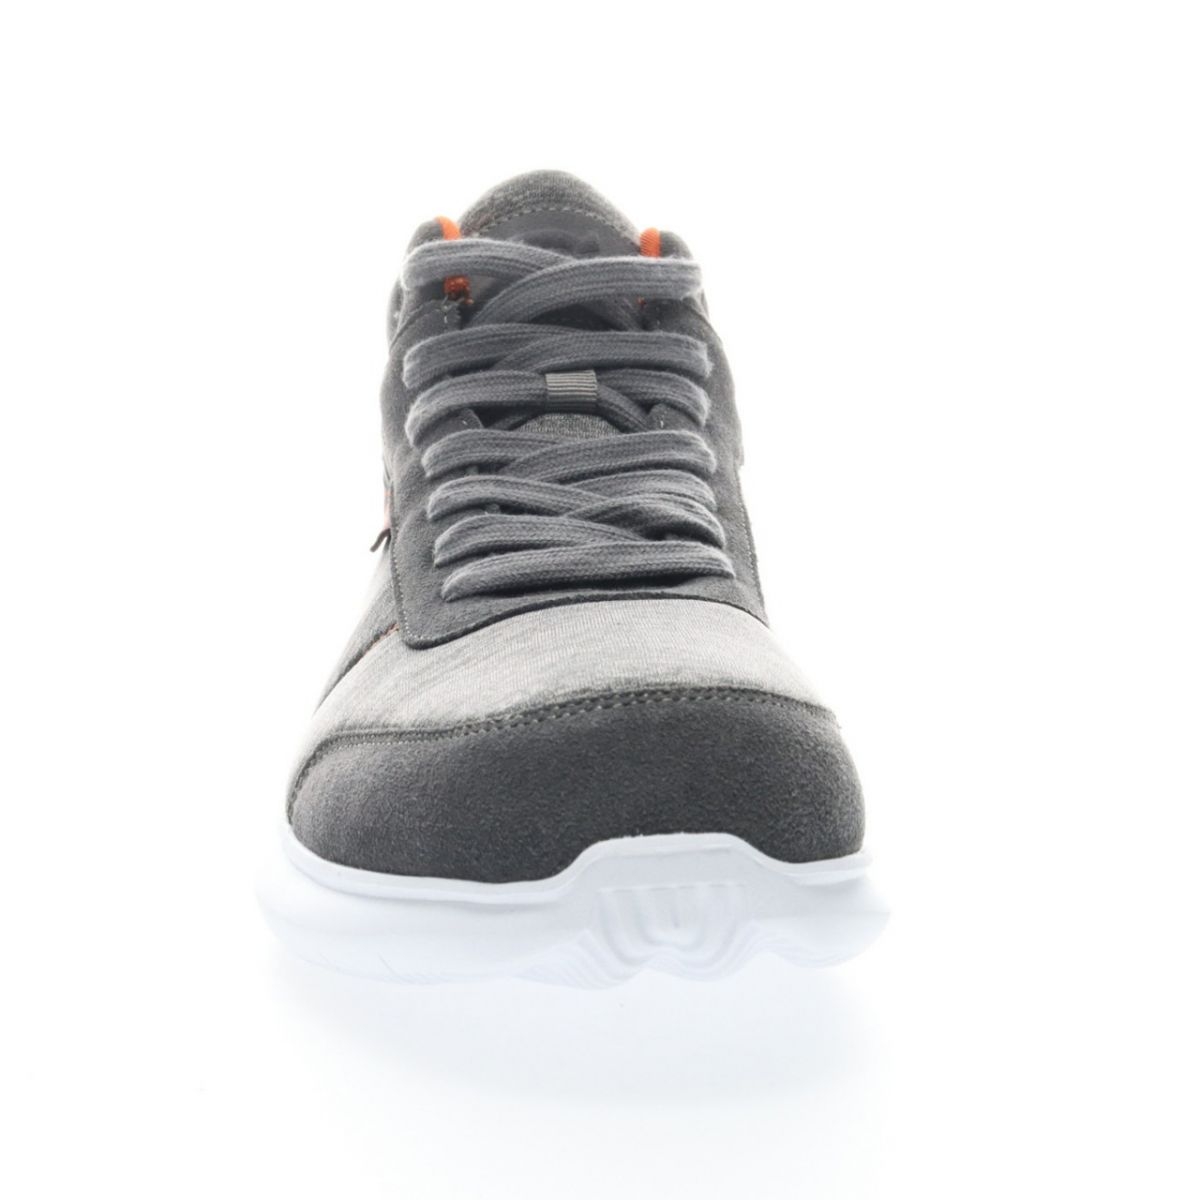 Propet Men's Viator Hi Sneaker Grey/Orange - MAA112MGOR Grey/orange - Grey/orange, 15 X-Wide